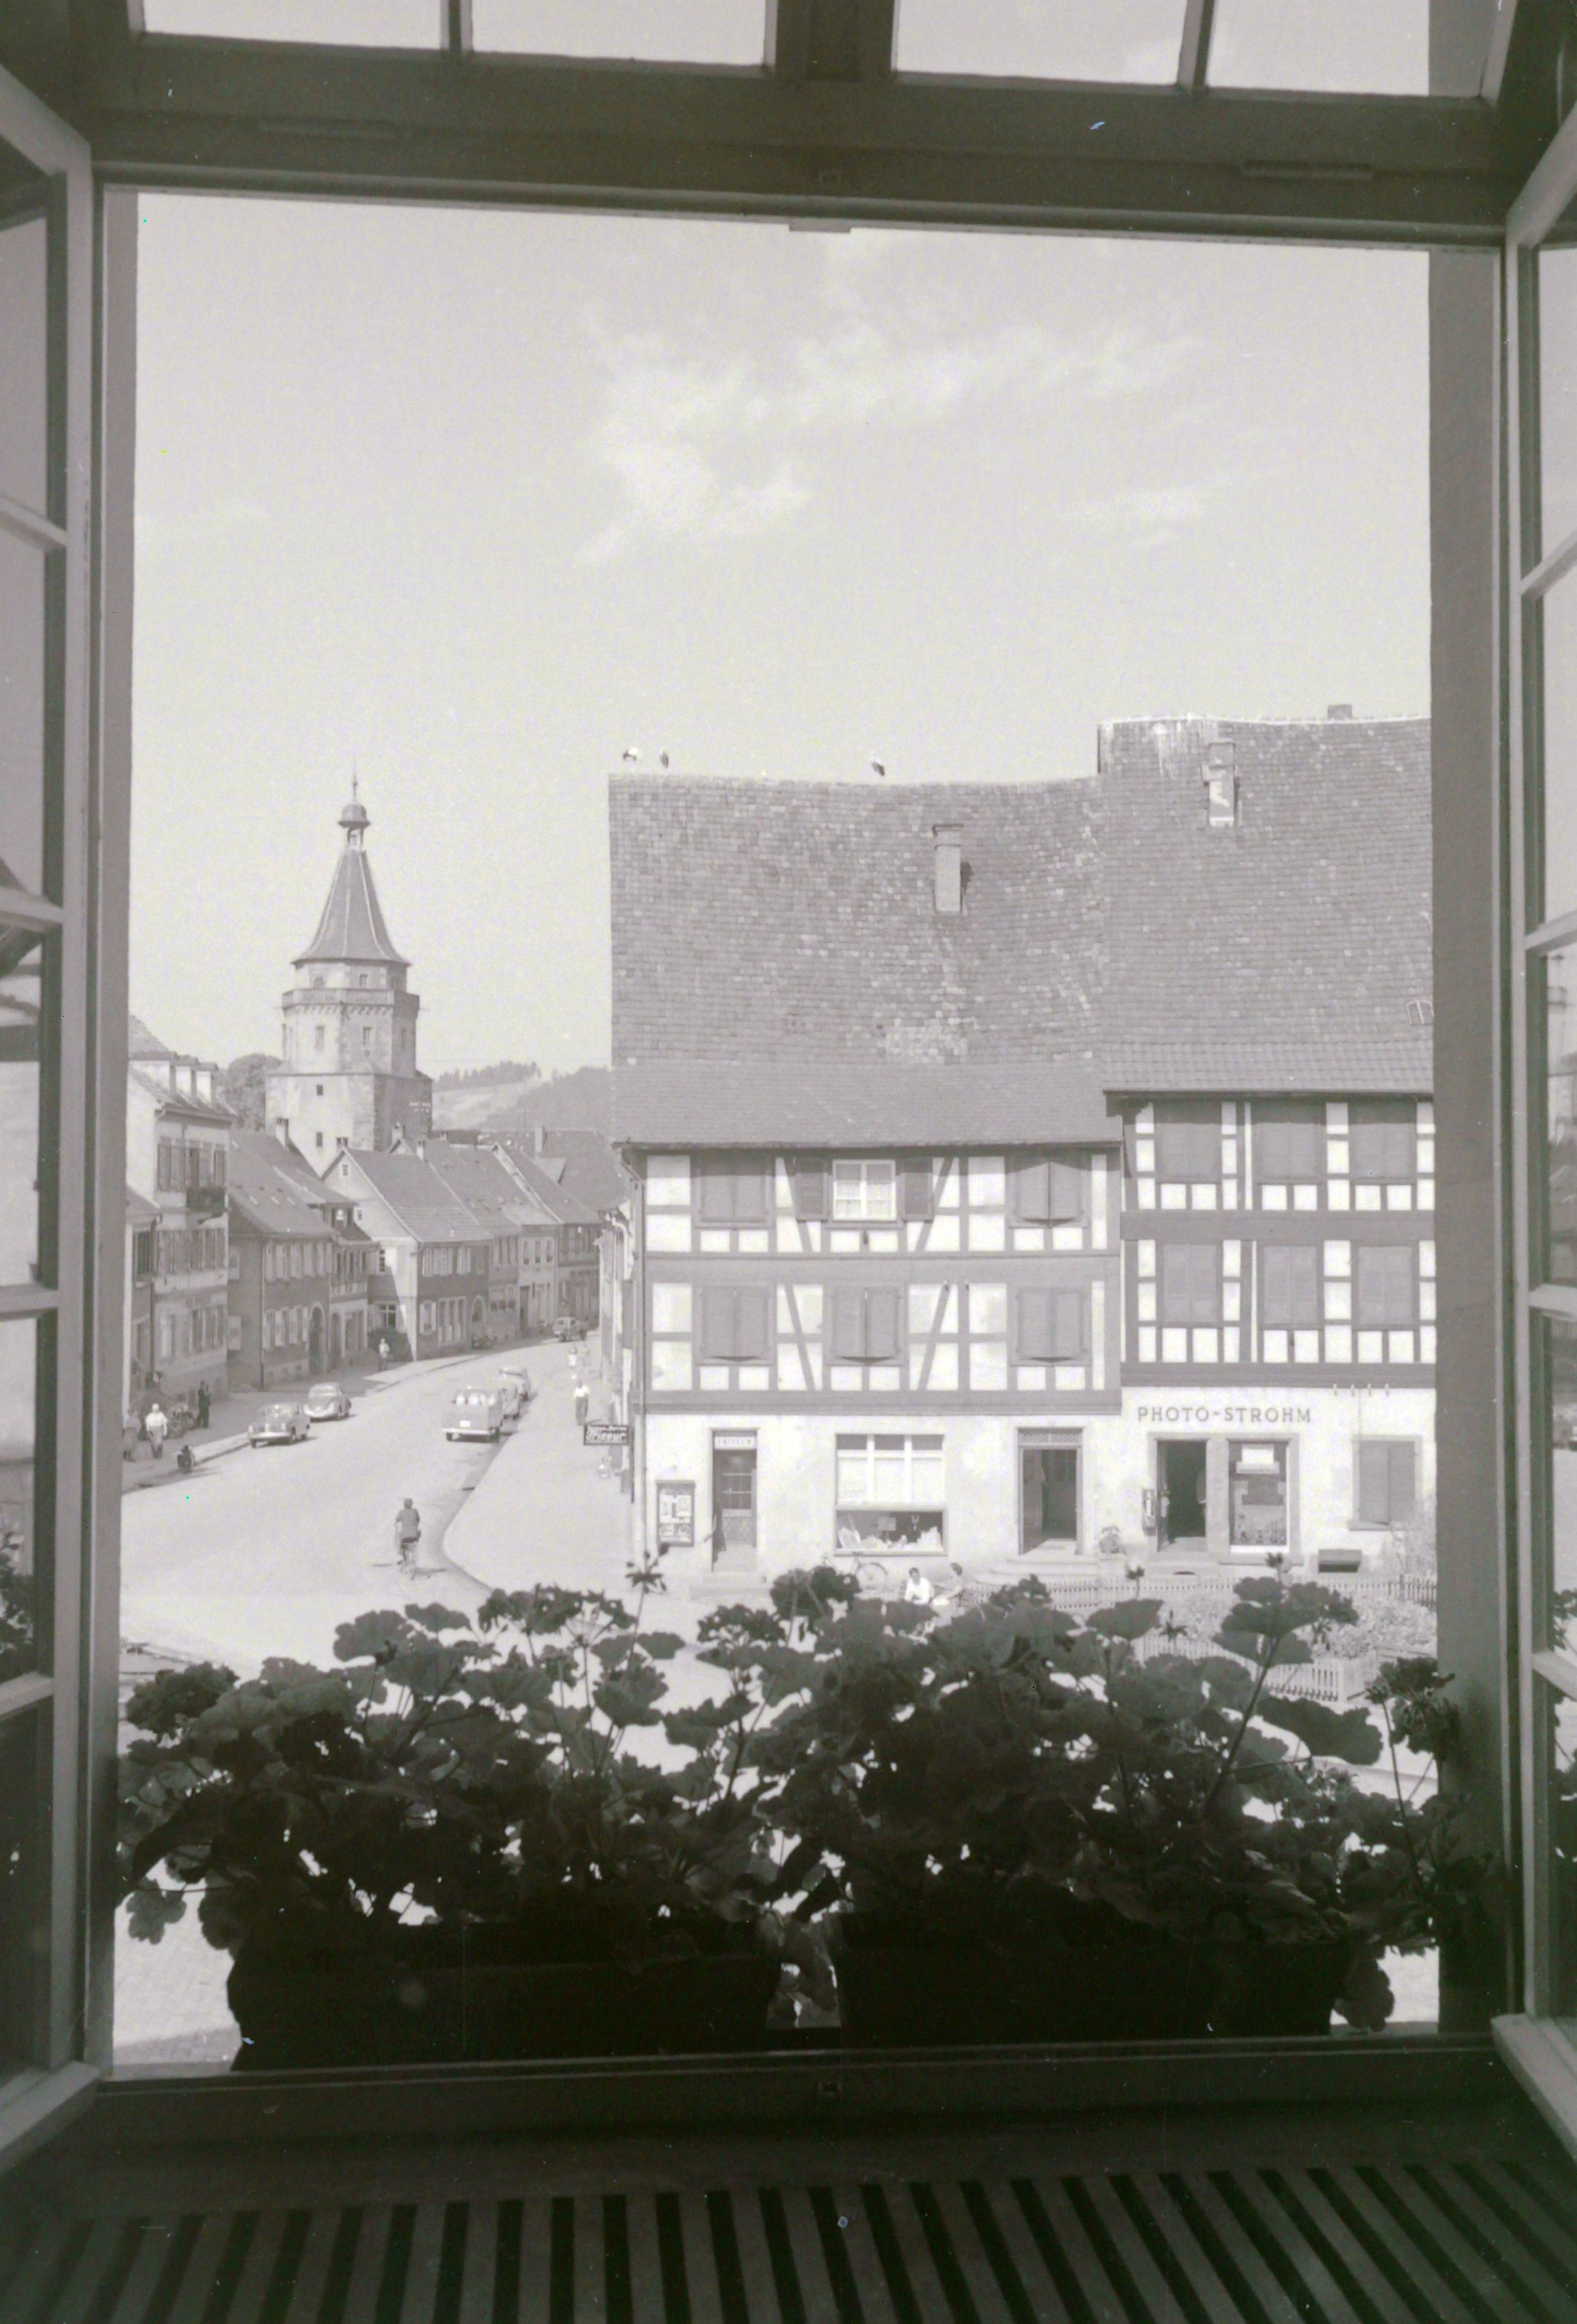 Blick aus dem Fenster  zum Niggelturm, Bild von Friedrich Strohm von seinem Zuhause aus